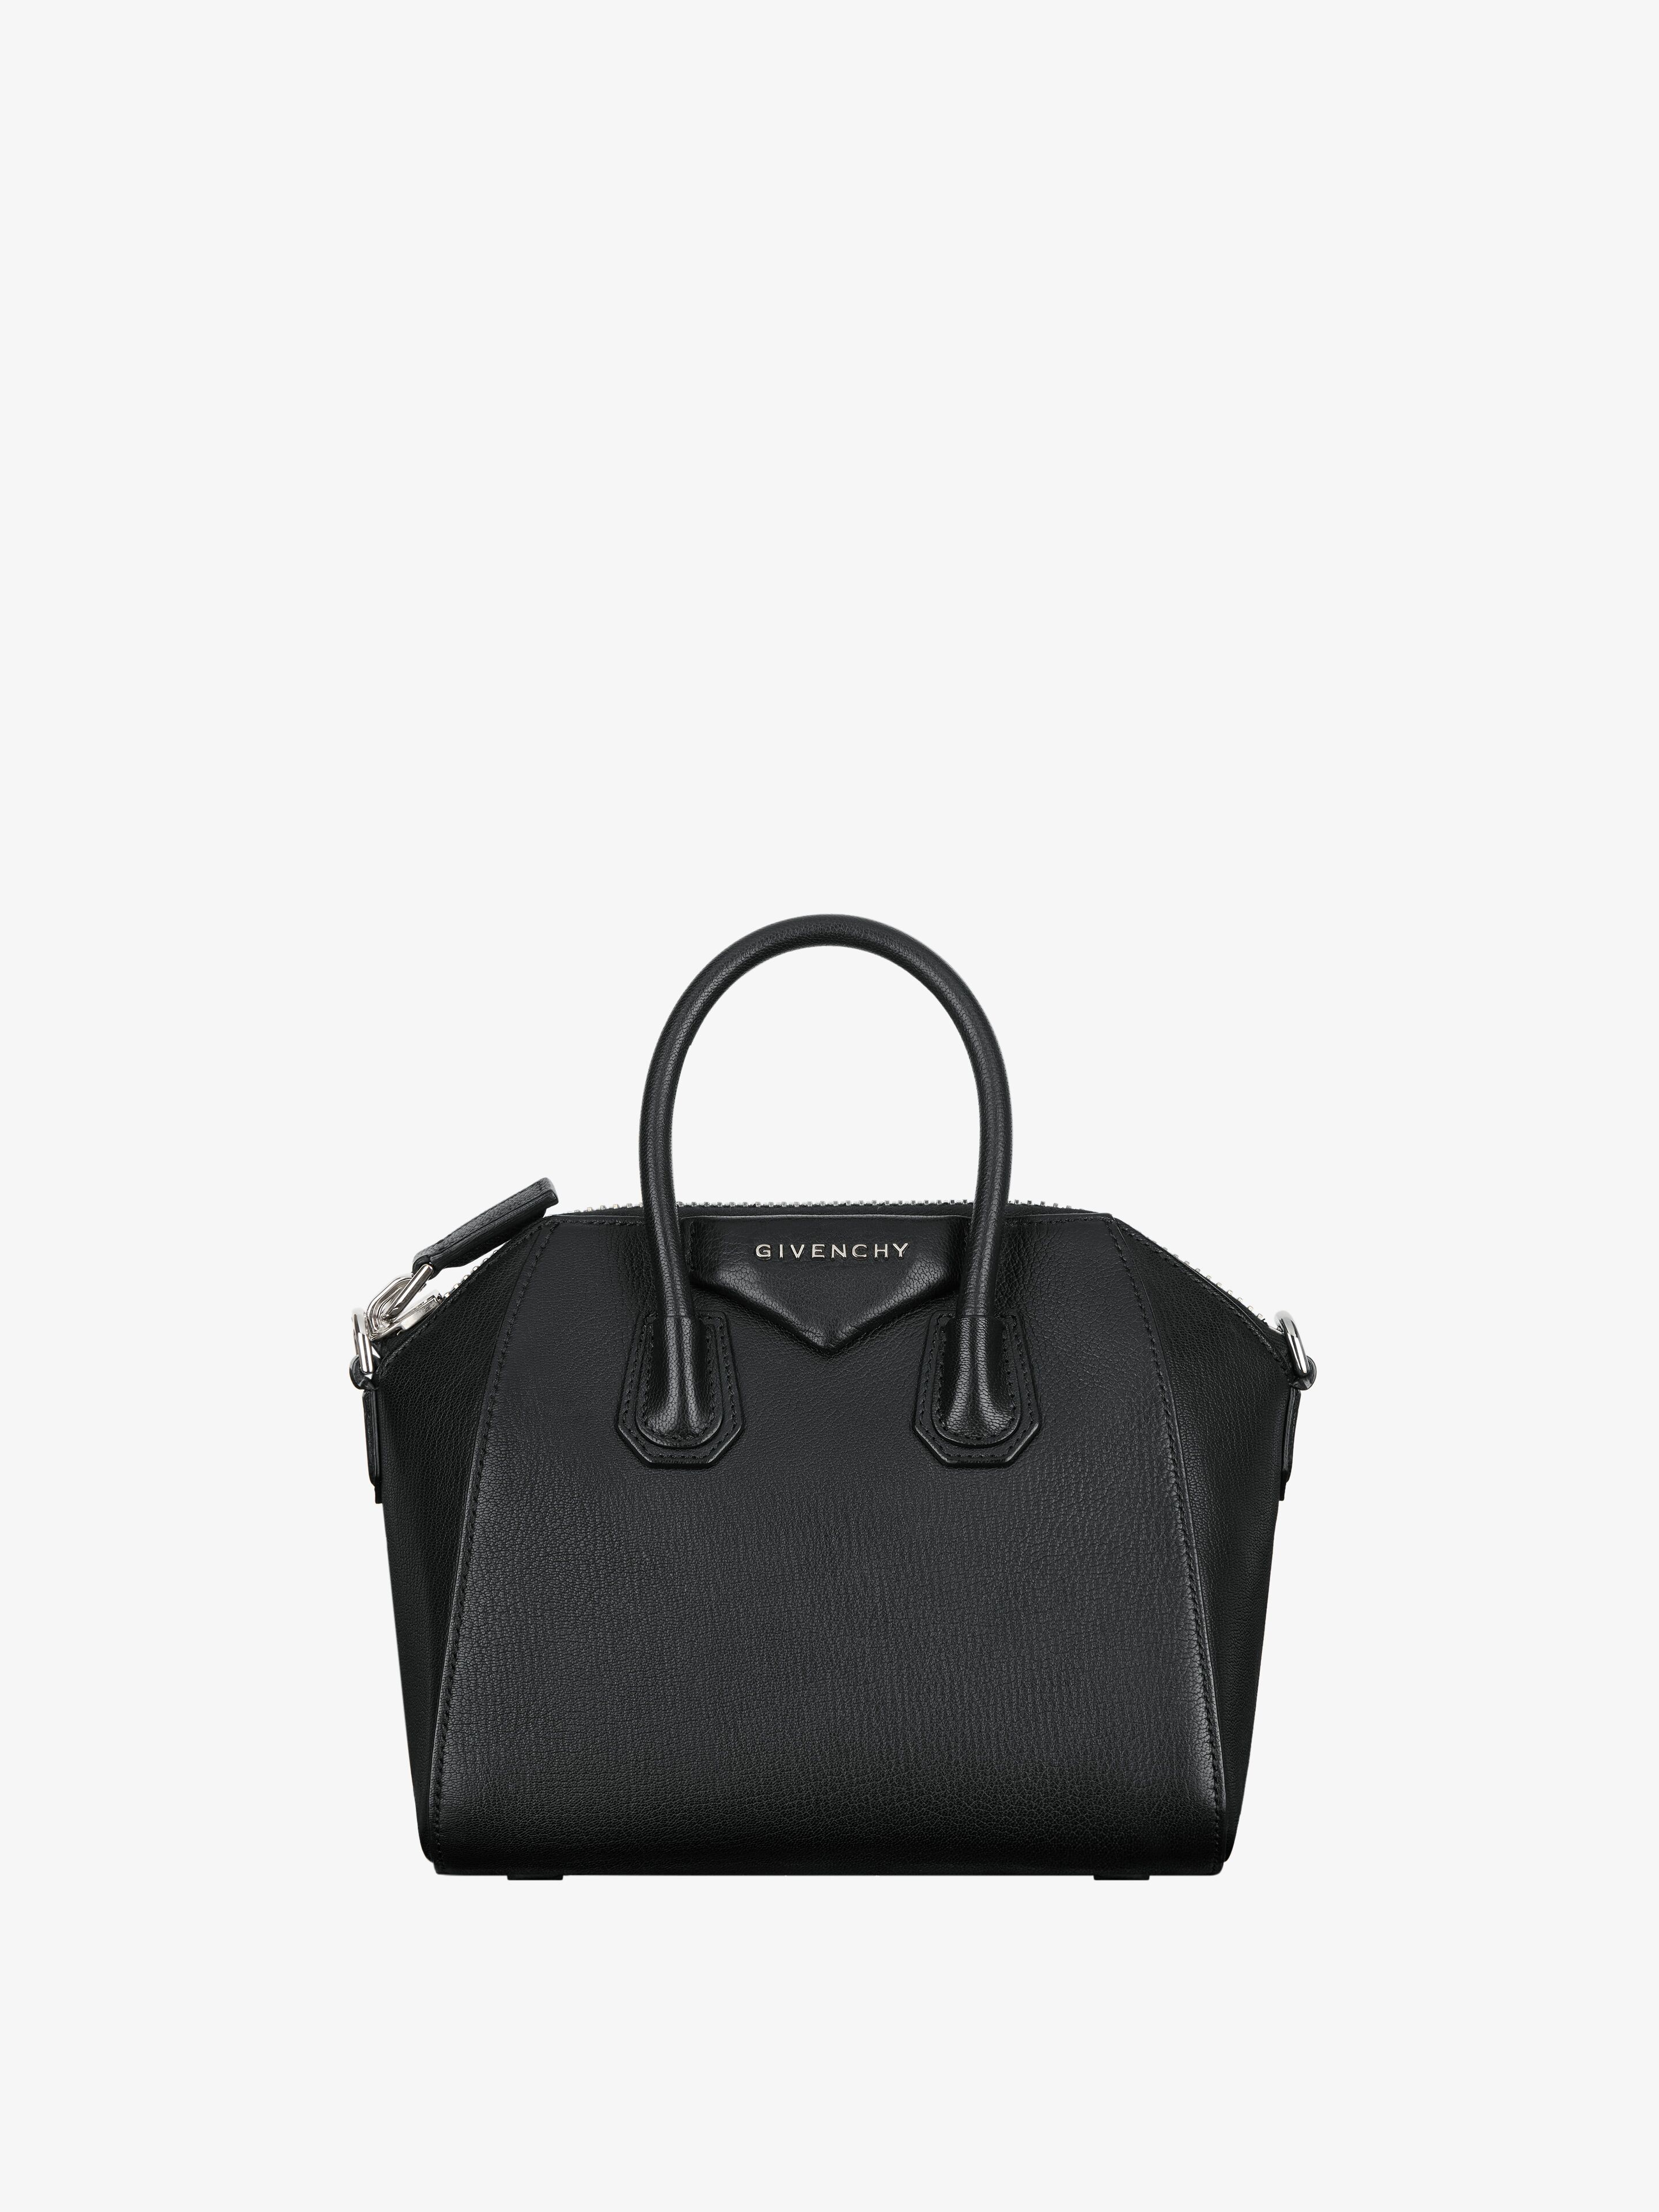 Givenchy Antigona Bags Collection for Women | Givenchy US